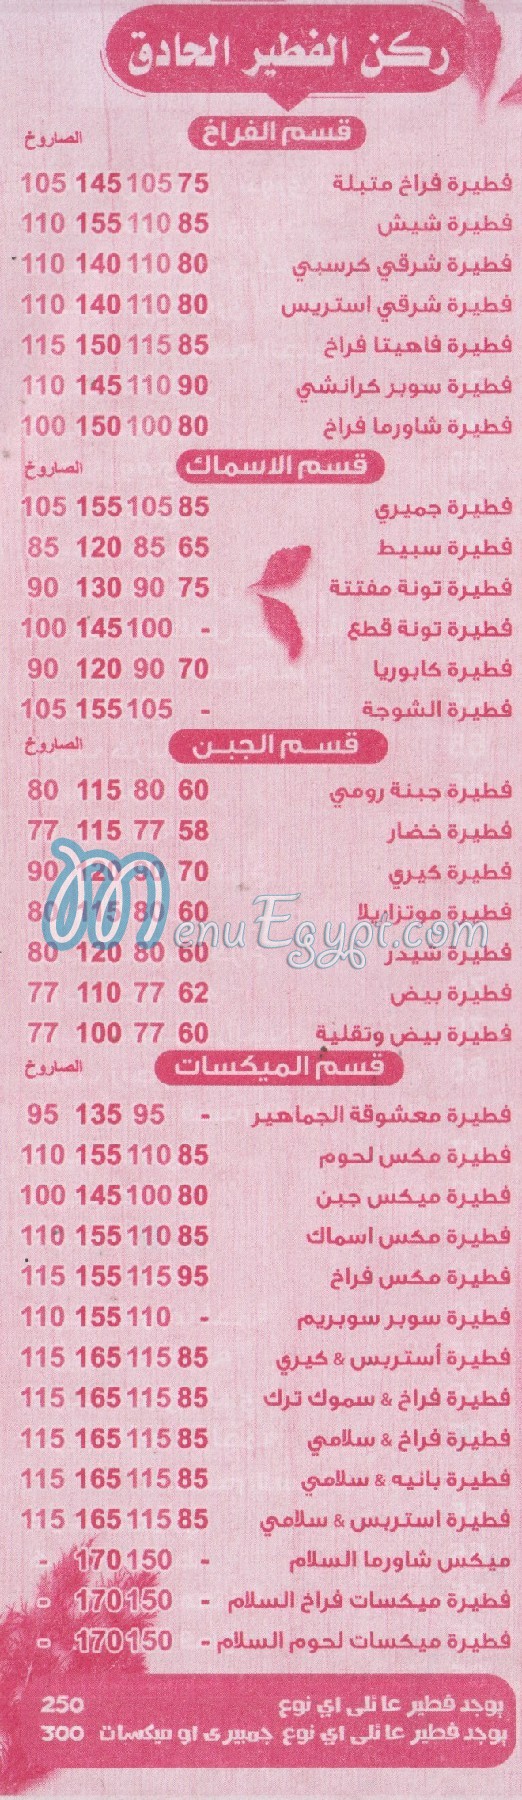 Al Salam Al Moqatam menu Egypt 2